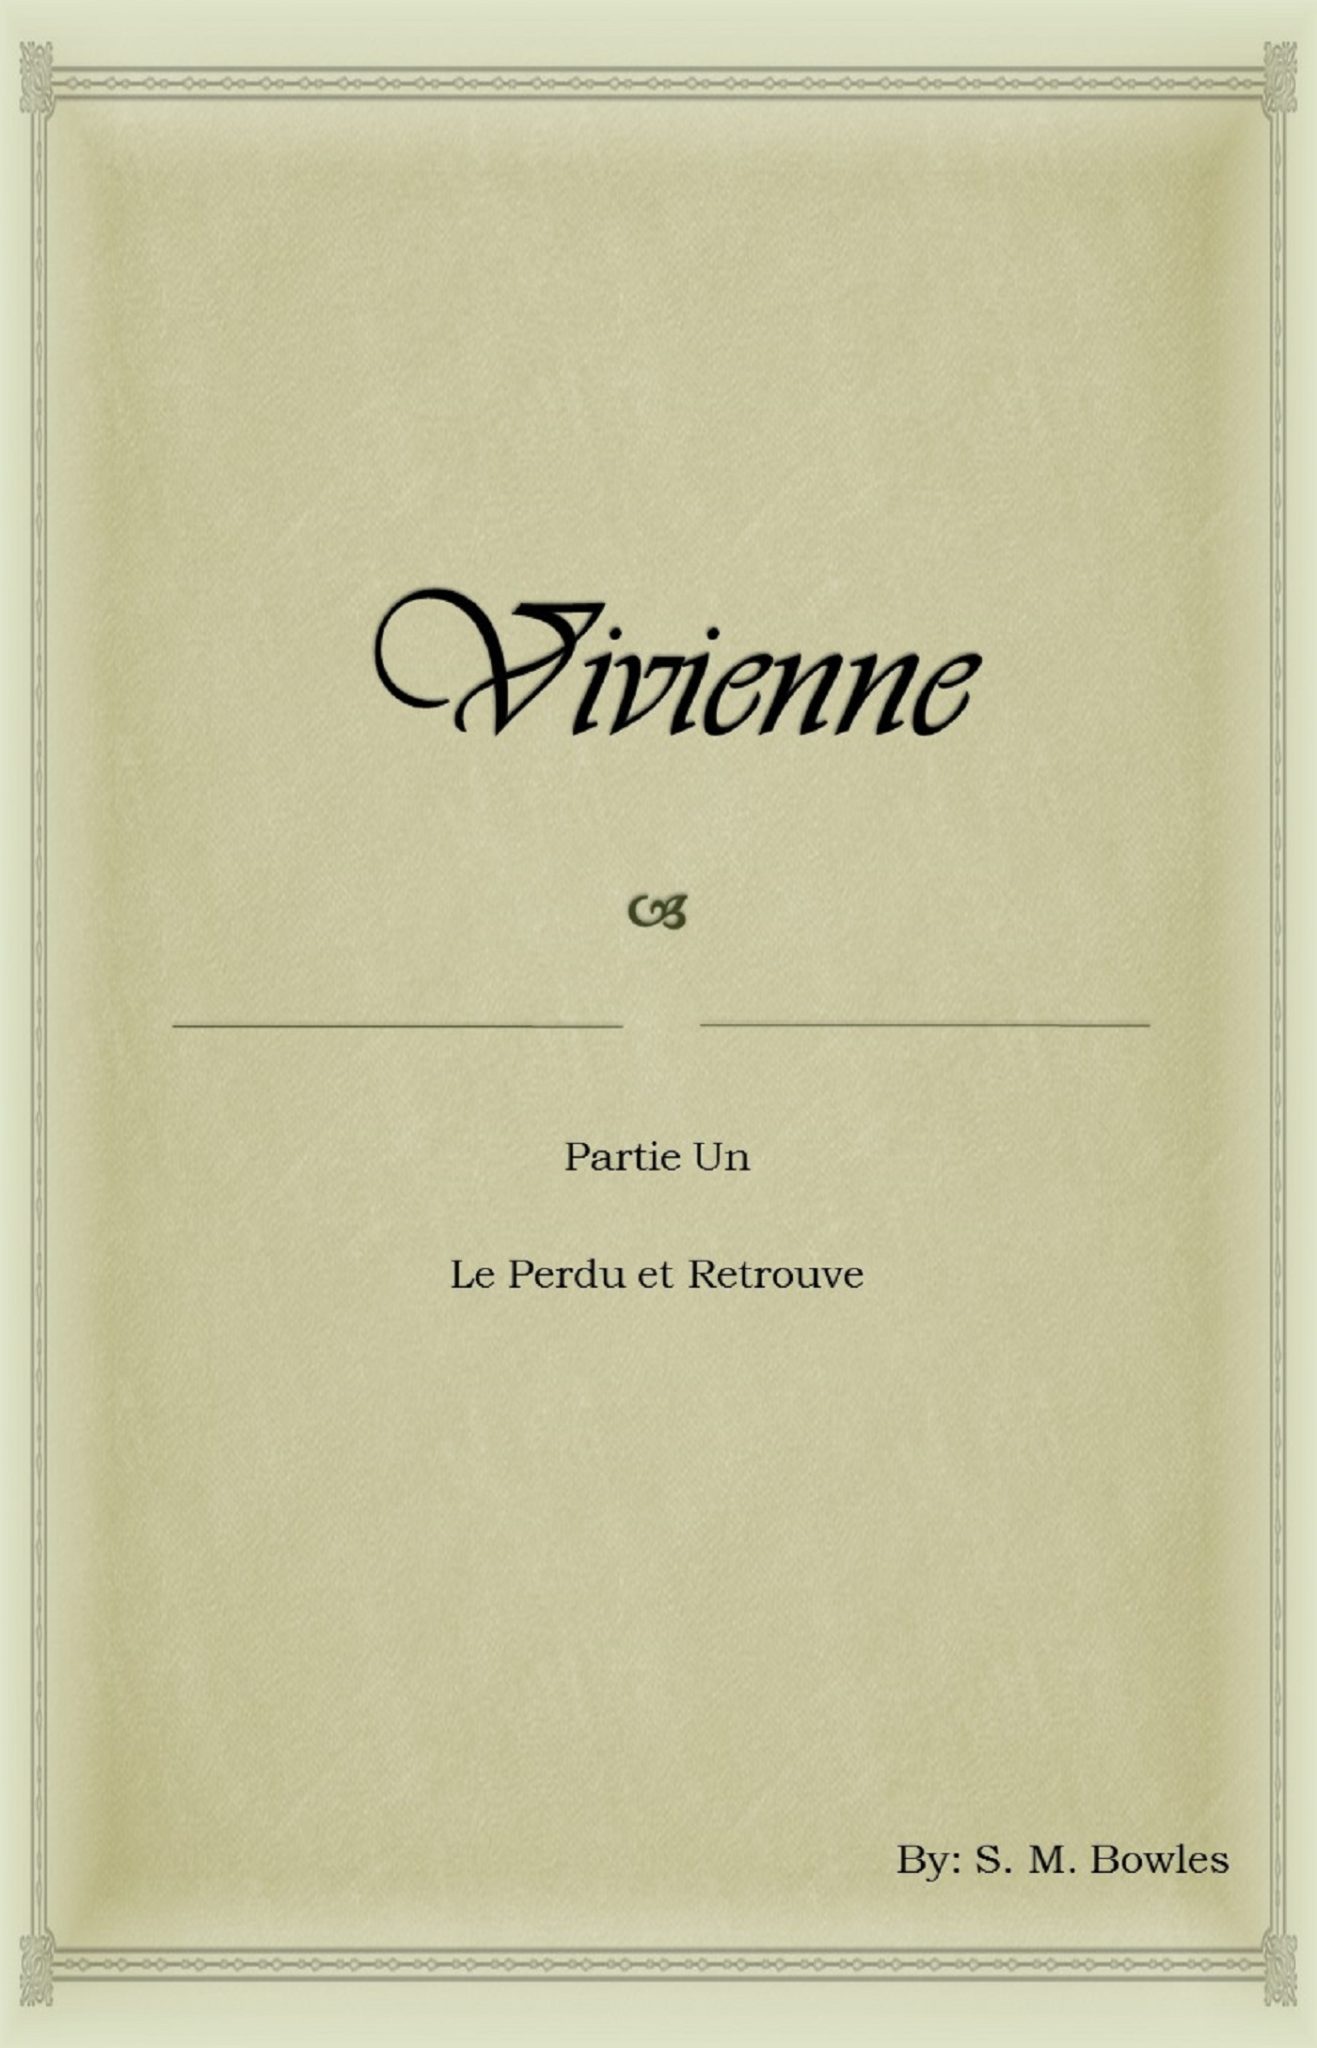 FREE: Vivienne: Le Perdu et Retrouve by S. M. Bowles